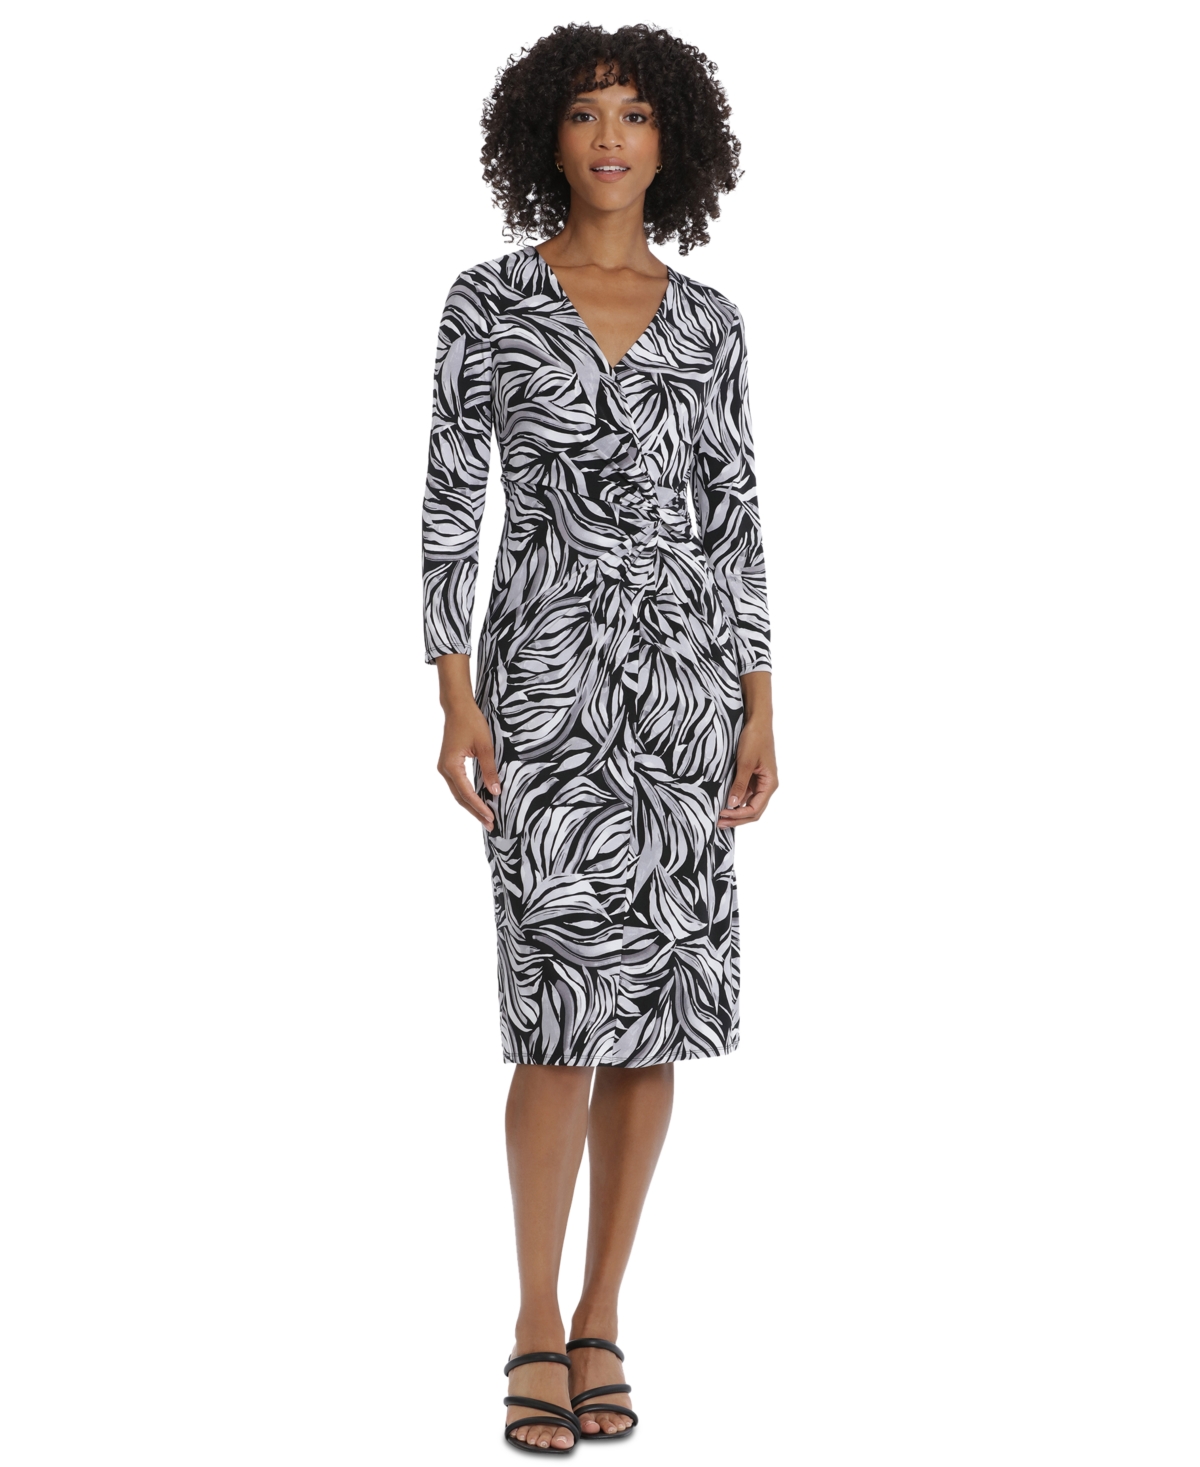 Women's Long-Sleeve Twist-Front Dress - Black/Light Grey